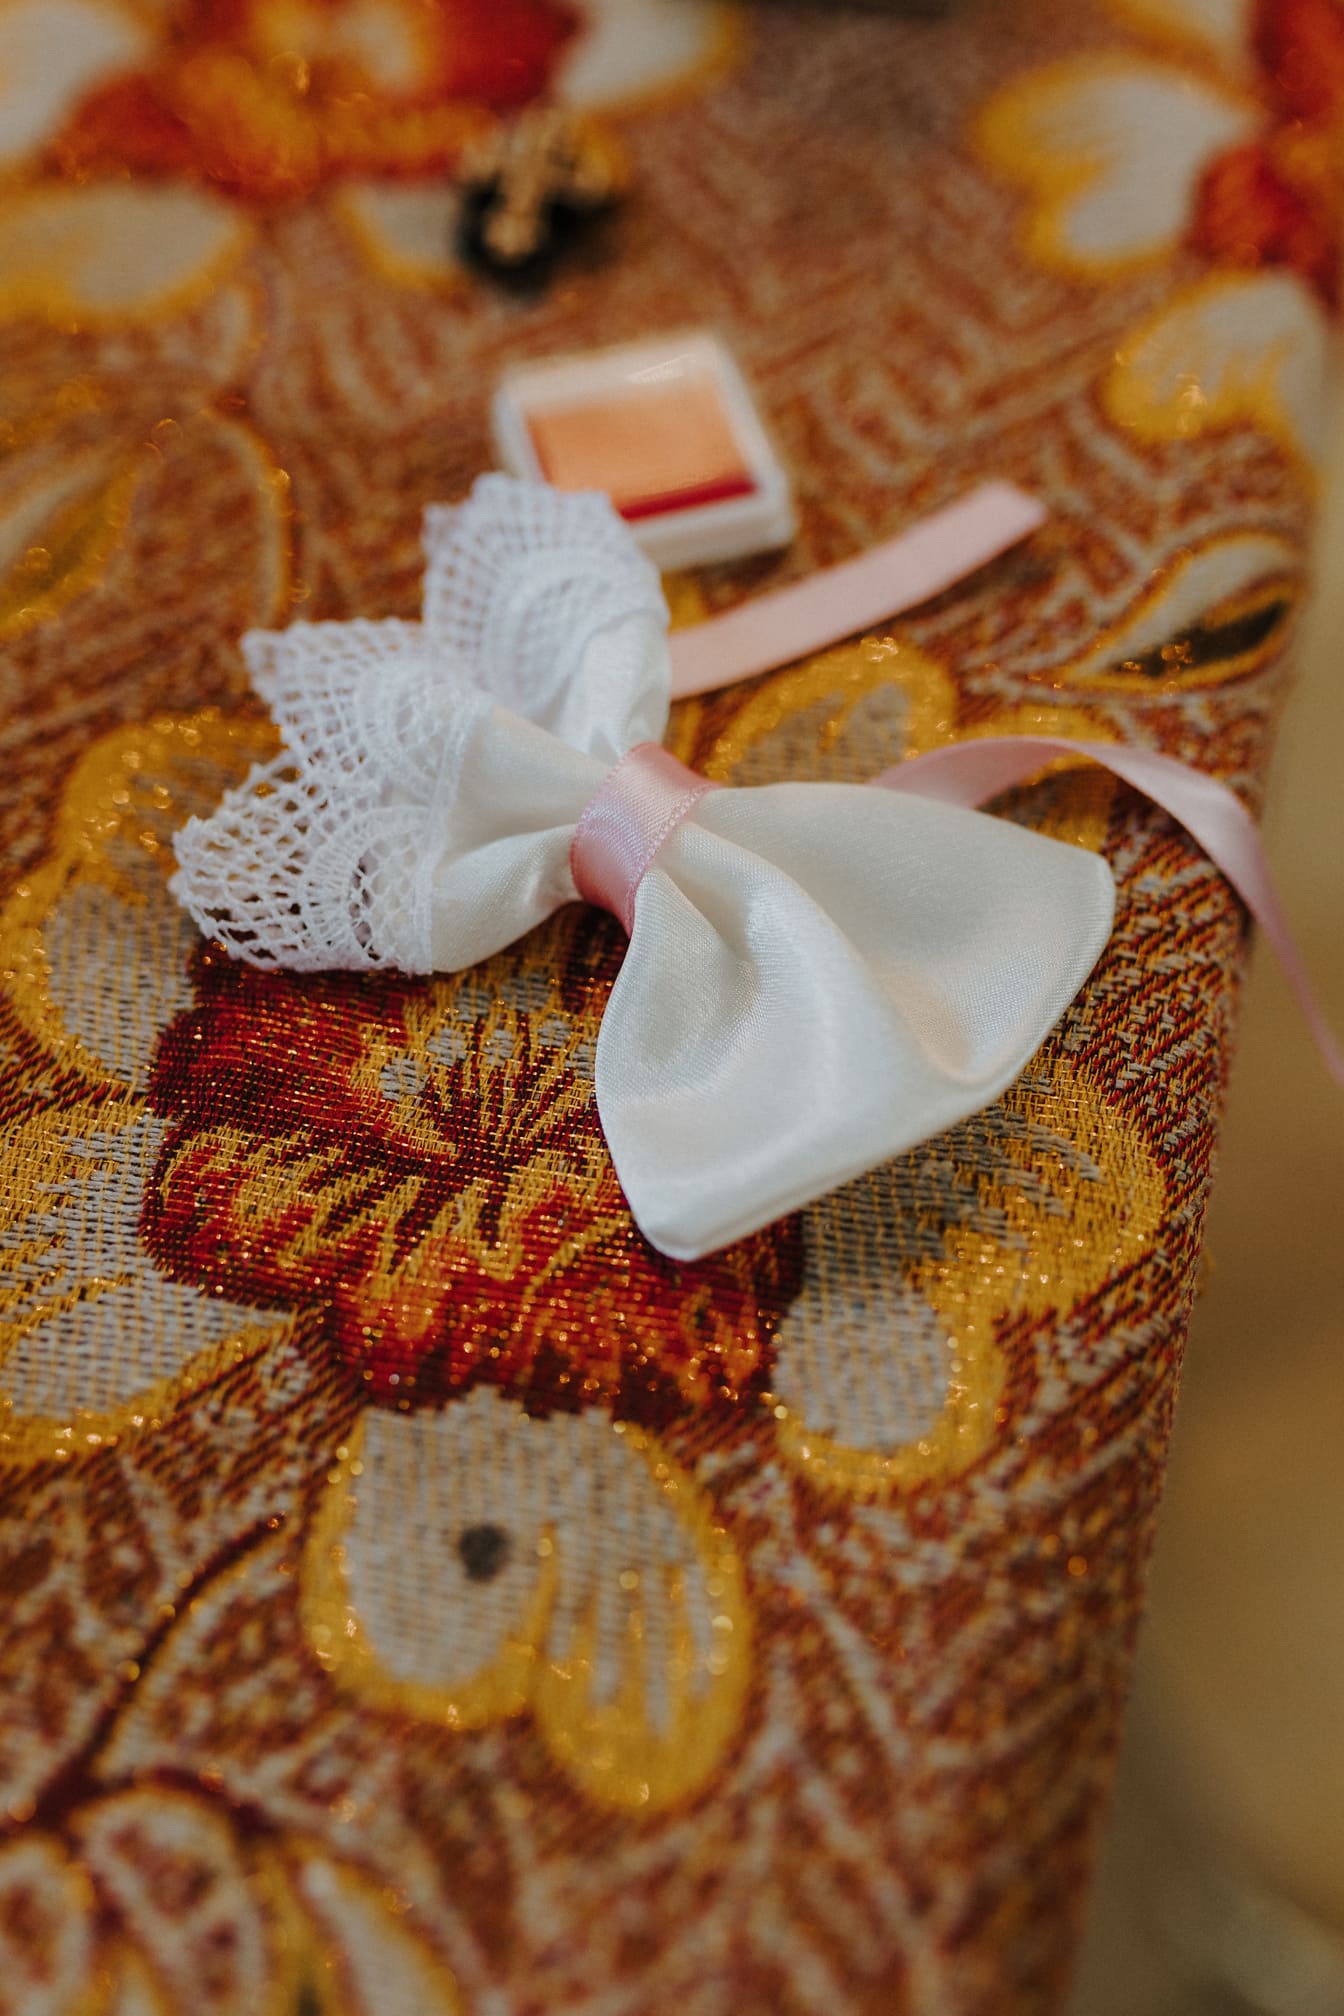 Close-up tas dekoratif putih dengan pita merah muda